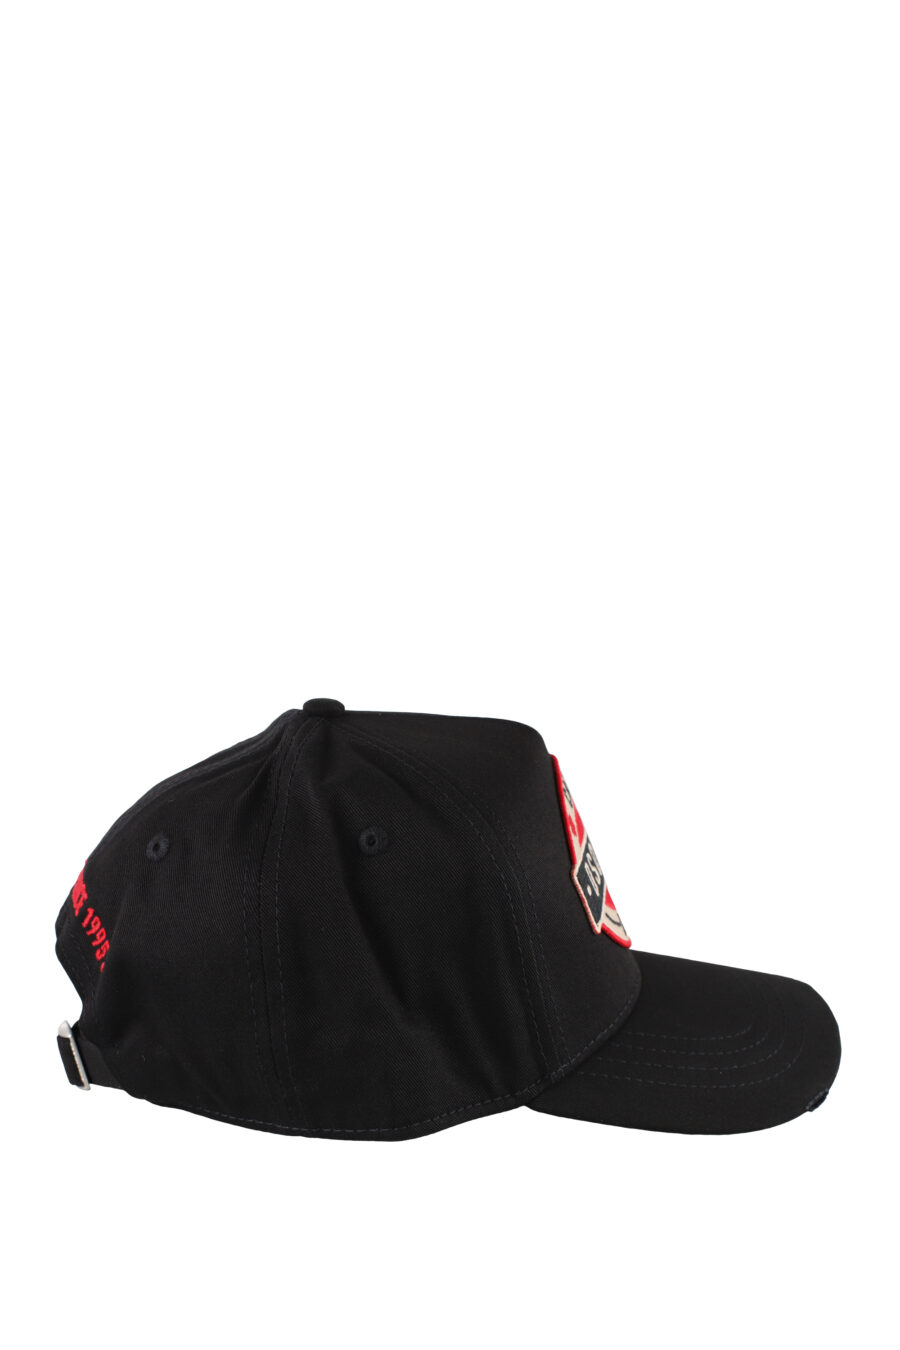 Gorra negra con parche y detalle rojo - IMG 5170